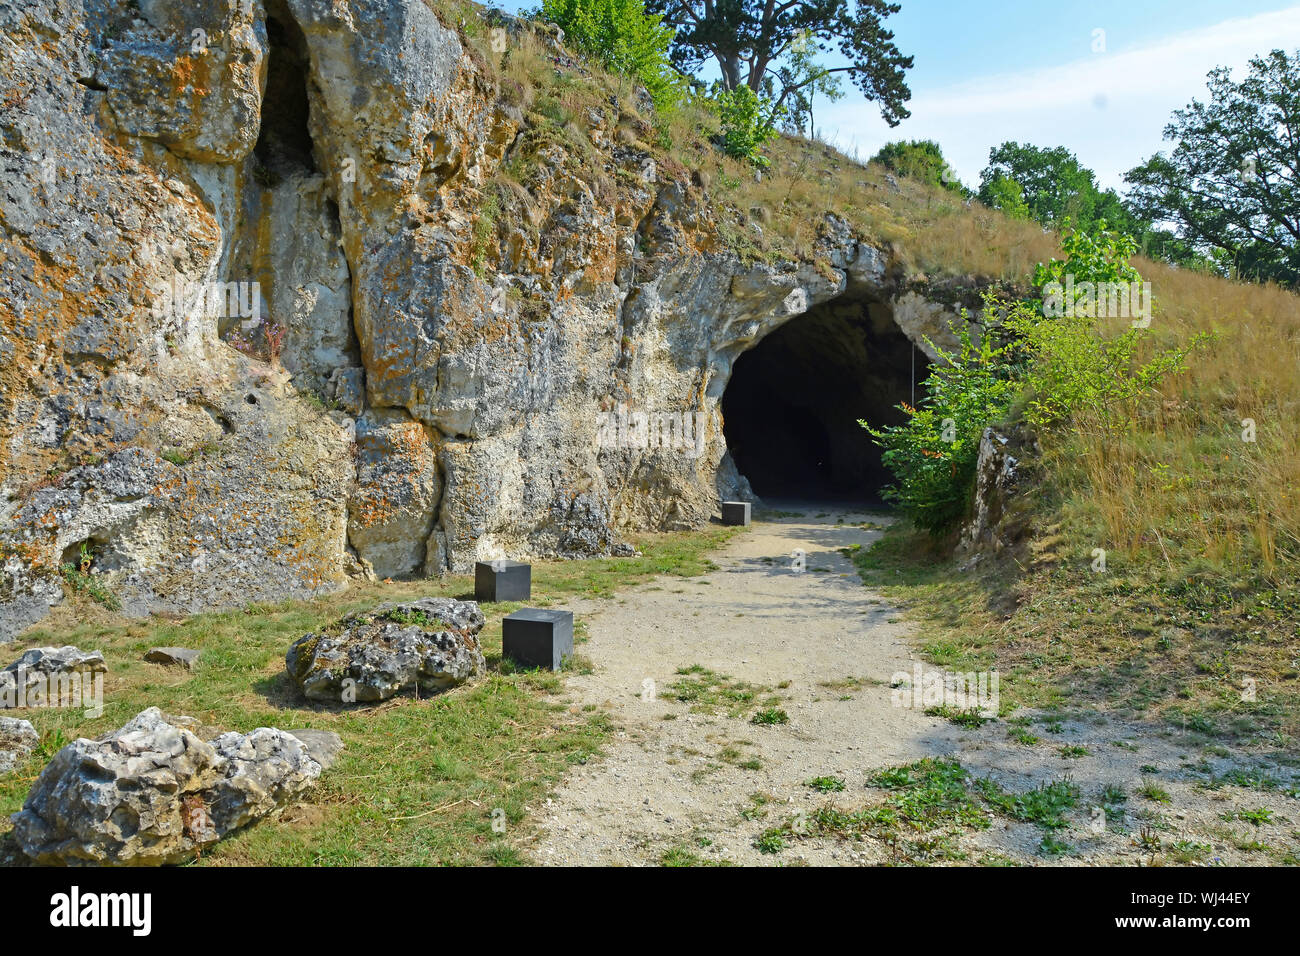 Der Eingang zum Vogelherdhöhle in Süddeutschland, die Lage einiger der wichtigsten prähistorischen Funde aus der Eiszeit Stockfoto